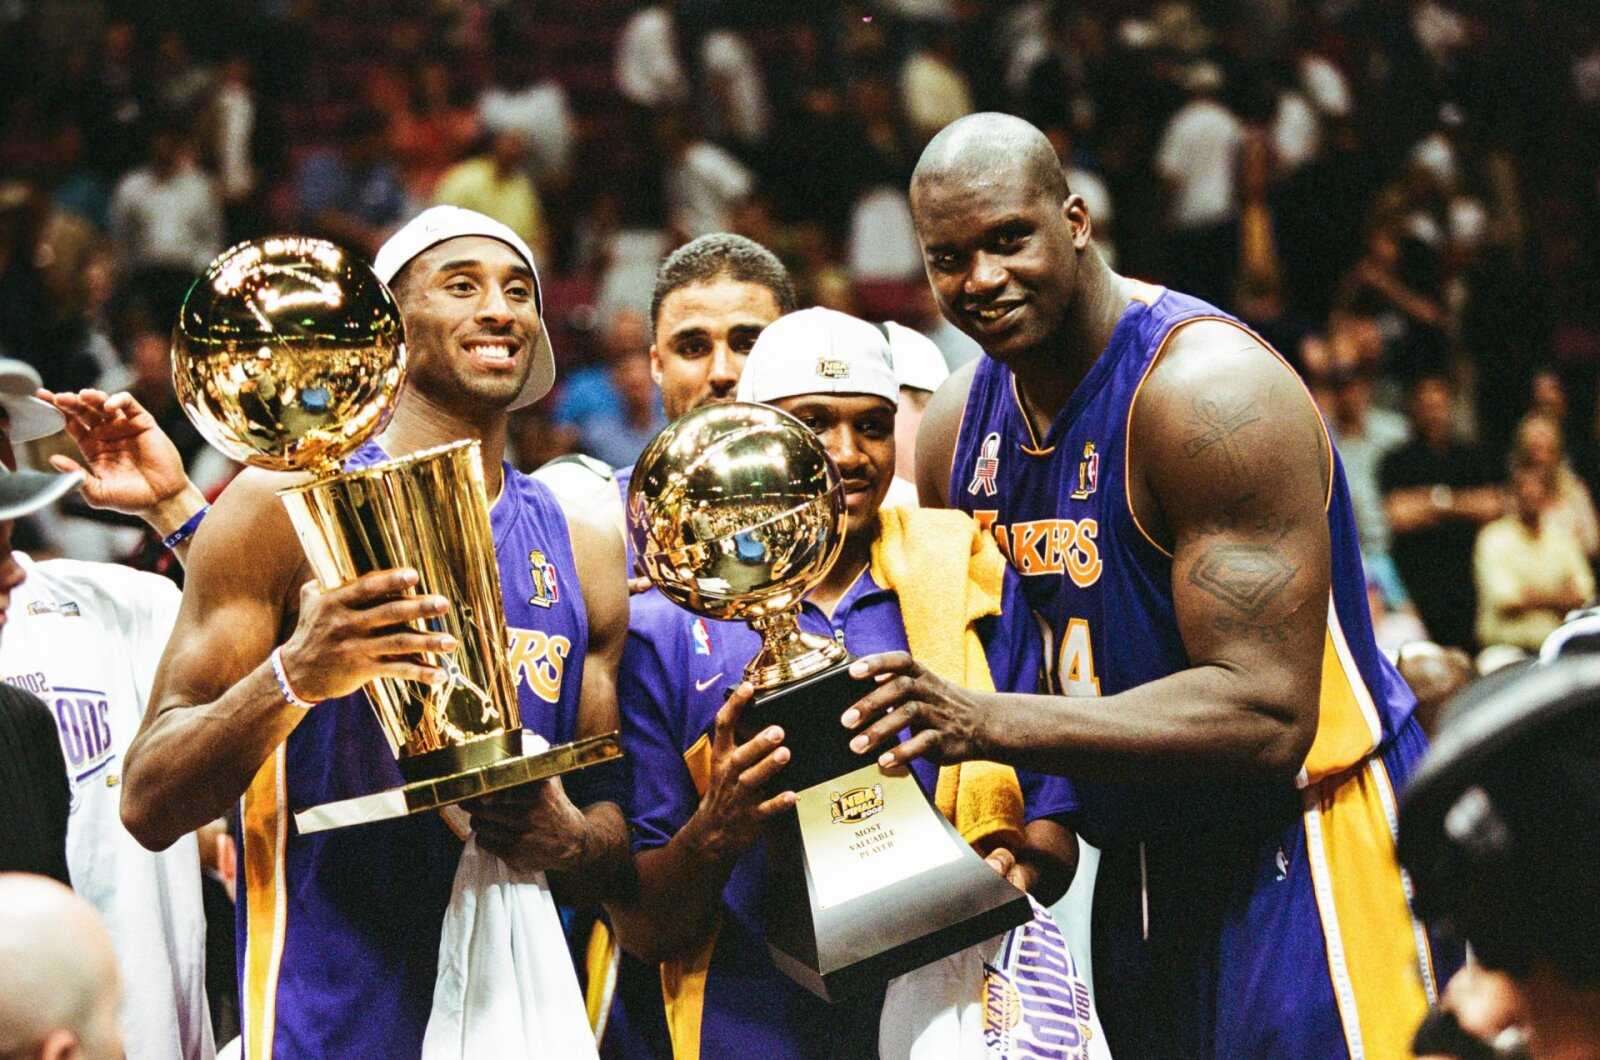 Le Temple de la renommée Chris Webber révèle qu'il voulait faire équipe avec Kobe Bryant chez Lakers au lieu de déménager chez Kings